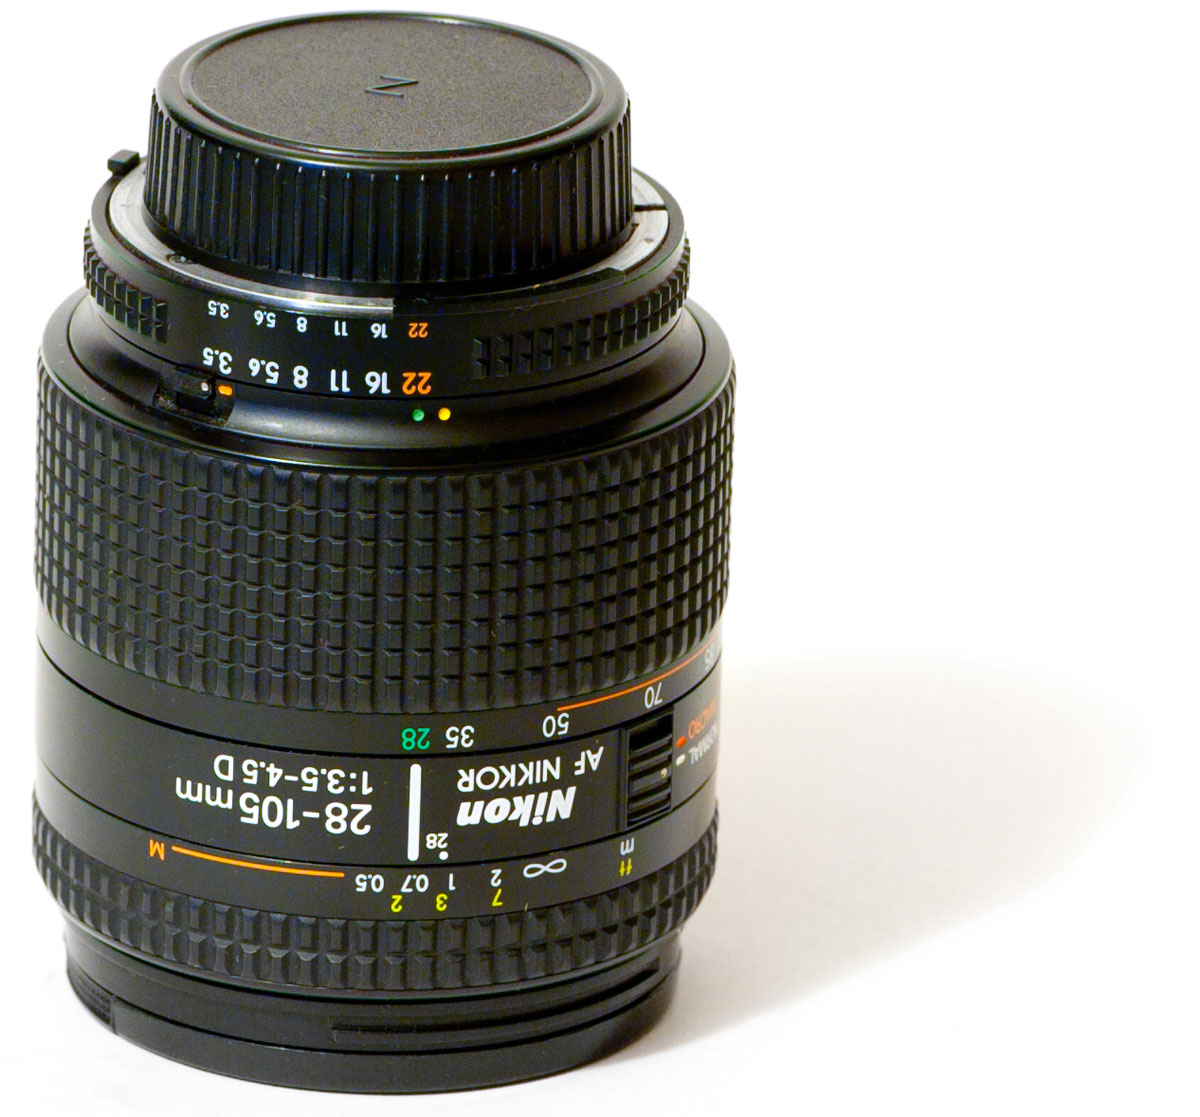   Nikon 28-105mm f/3.5-4.5D AF Zoom-Nikkor